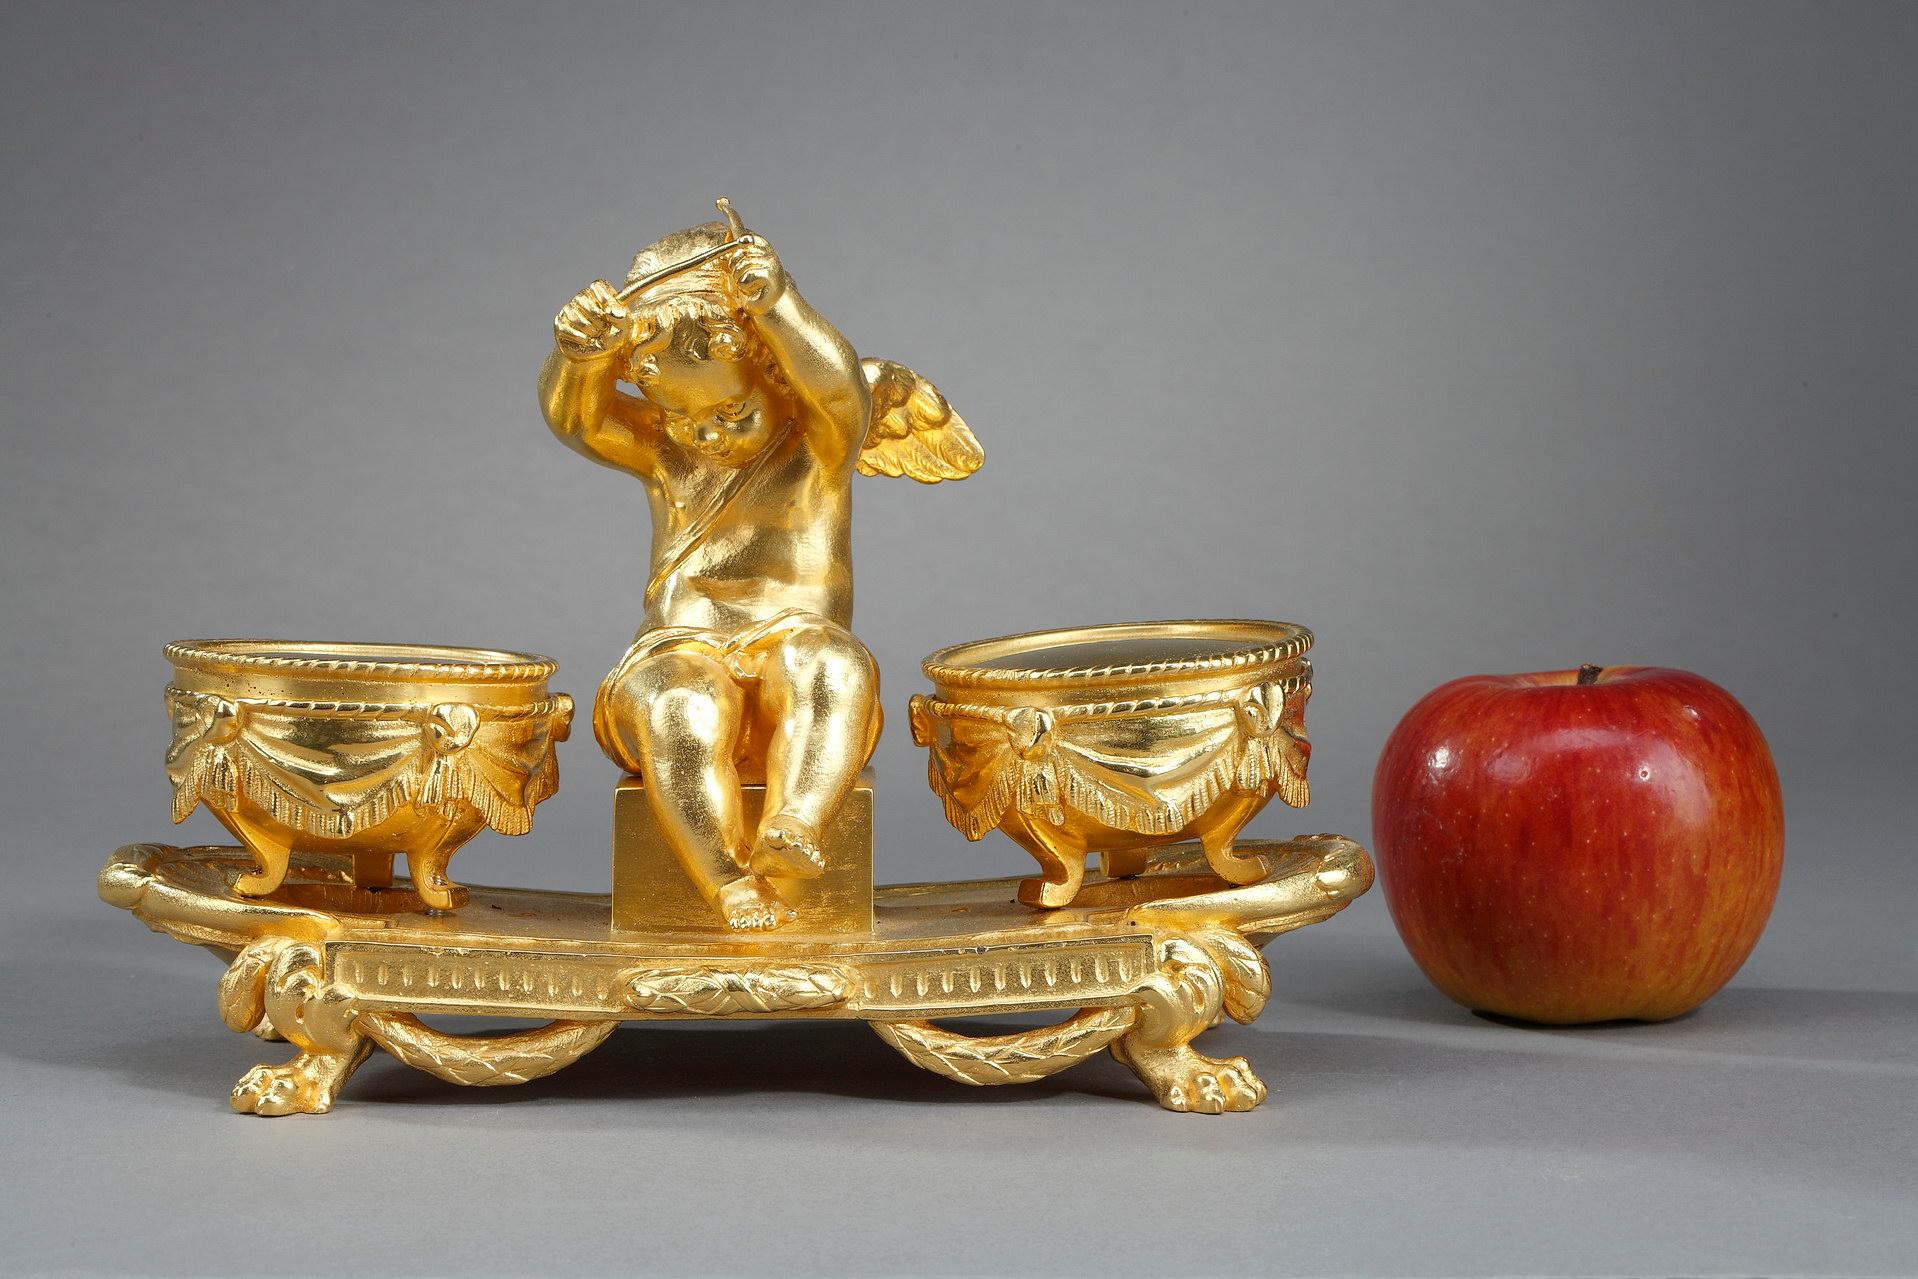 Encrier en bronze doré de style Louis XVI, représentant l'Amour assis avec deux bâtons dans les mains, entouré de timbales. Les timbales circulaires en bronze doré, sont décorées de draperies et reposent sur trois pieds. L'ensemble est fixé sur une